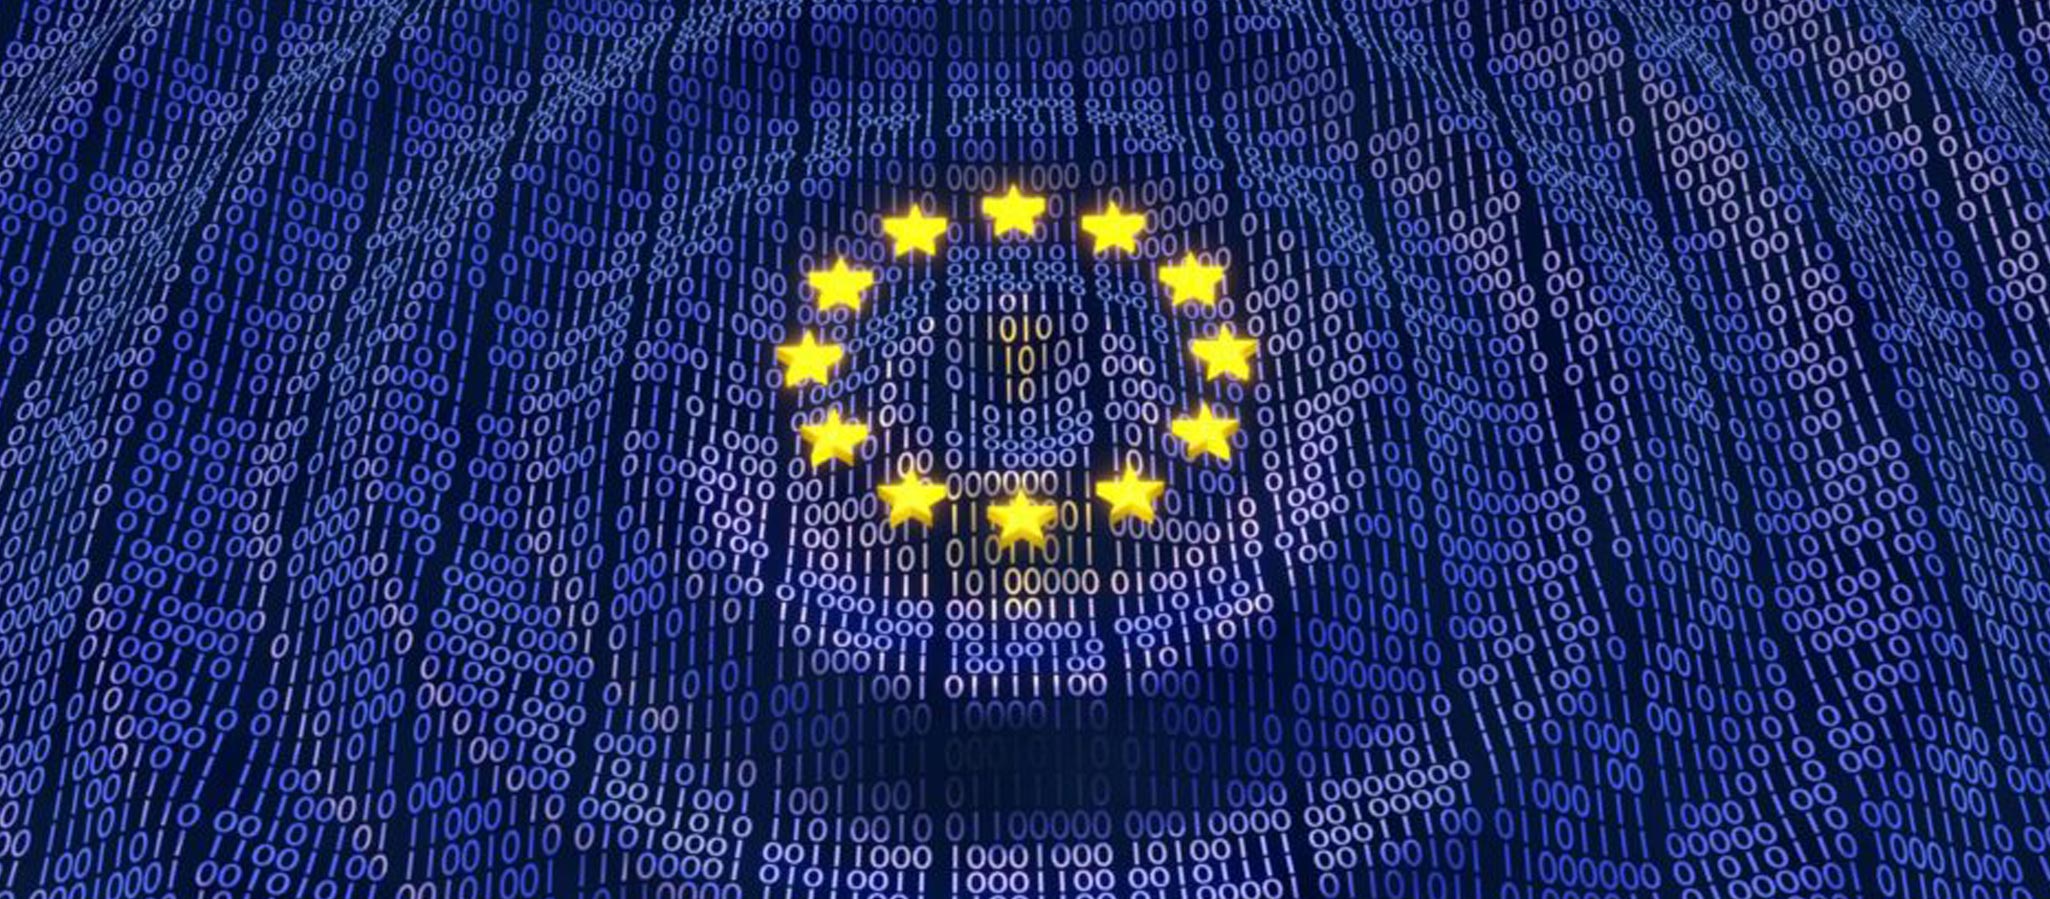 Europa da un paso firme hacia la Ley de Servicios Digitales